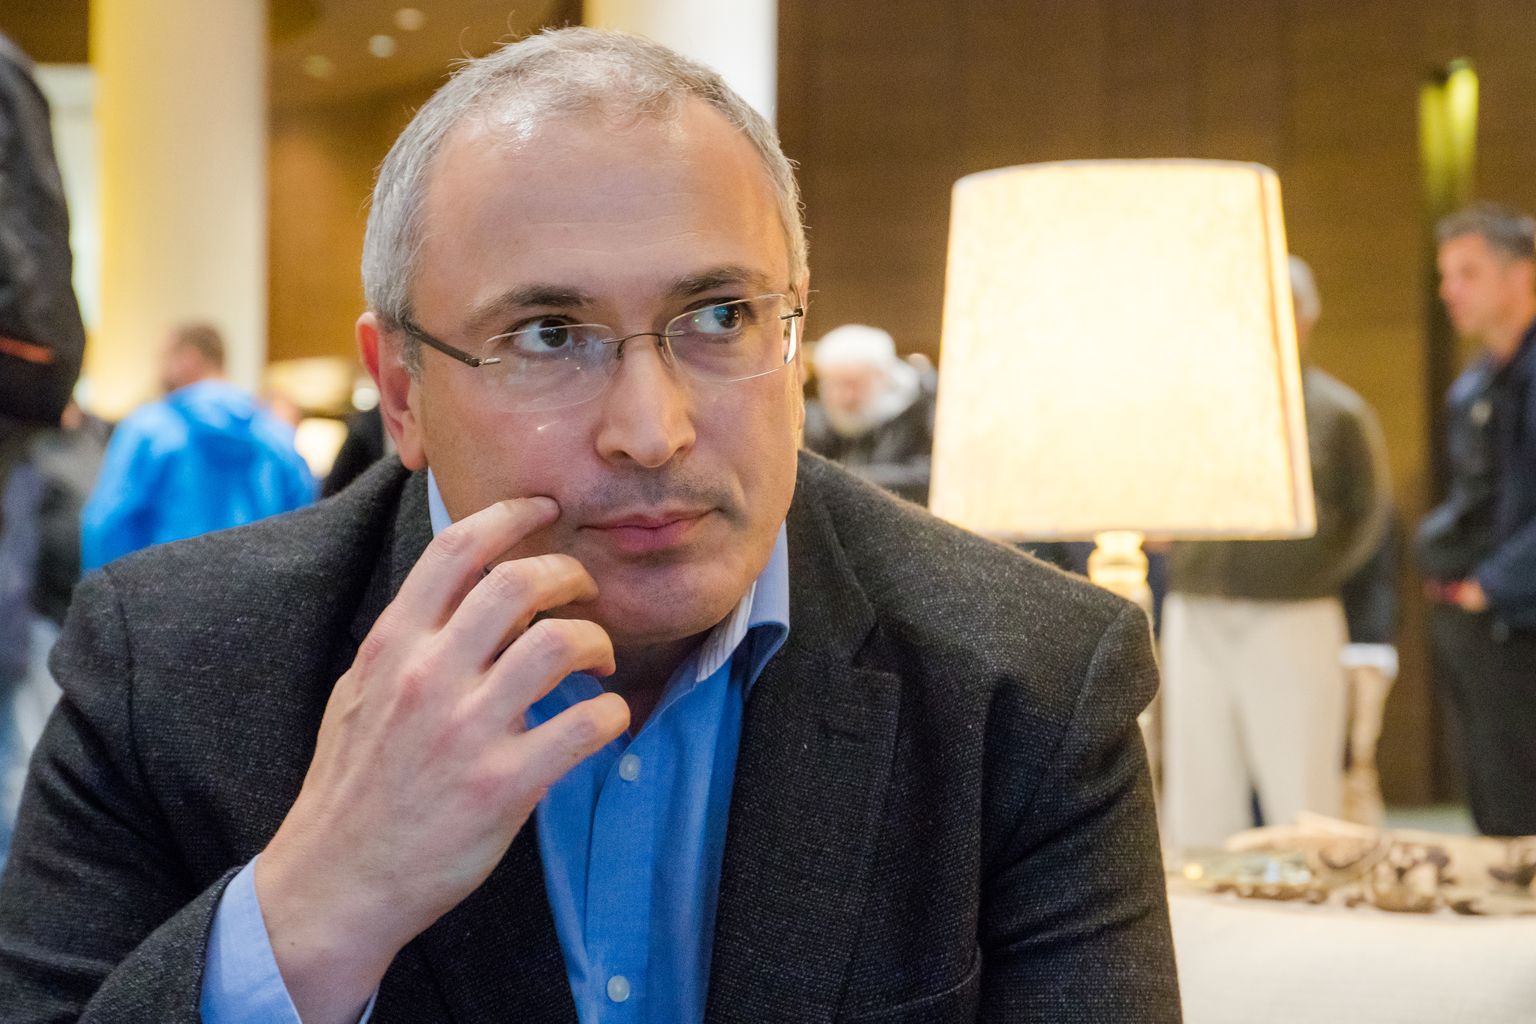 Venemaa opositsionäär Mihhail Hodorkovski 2017. aasta Tallinnas Swissotelis.